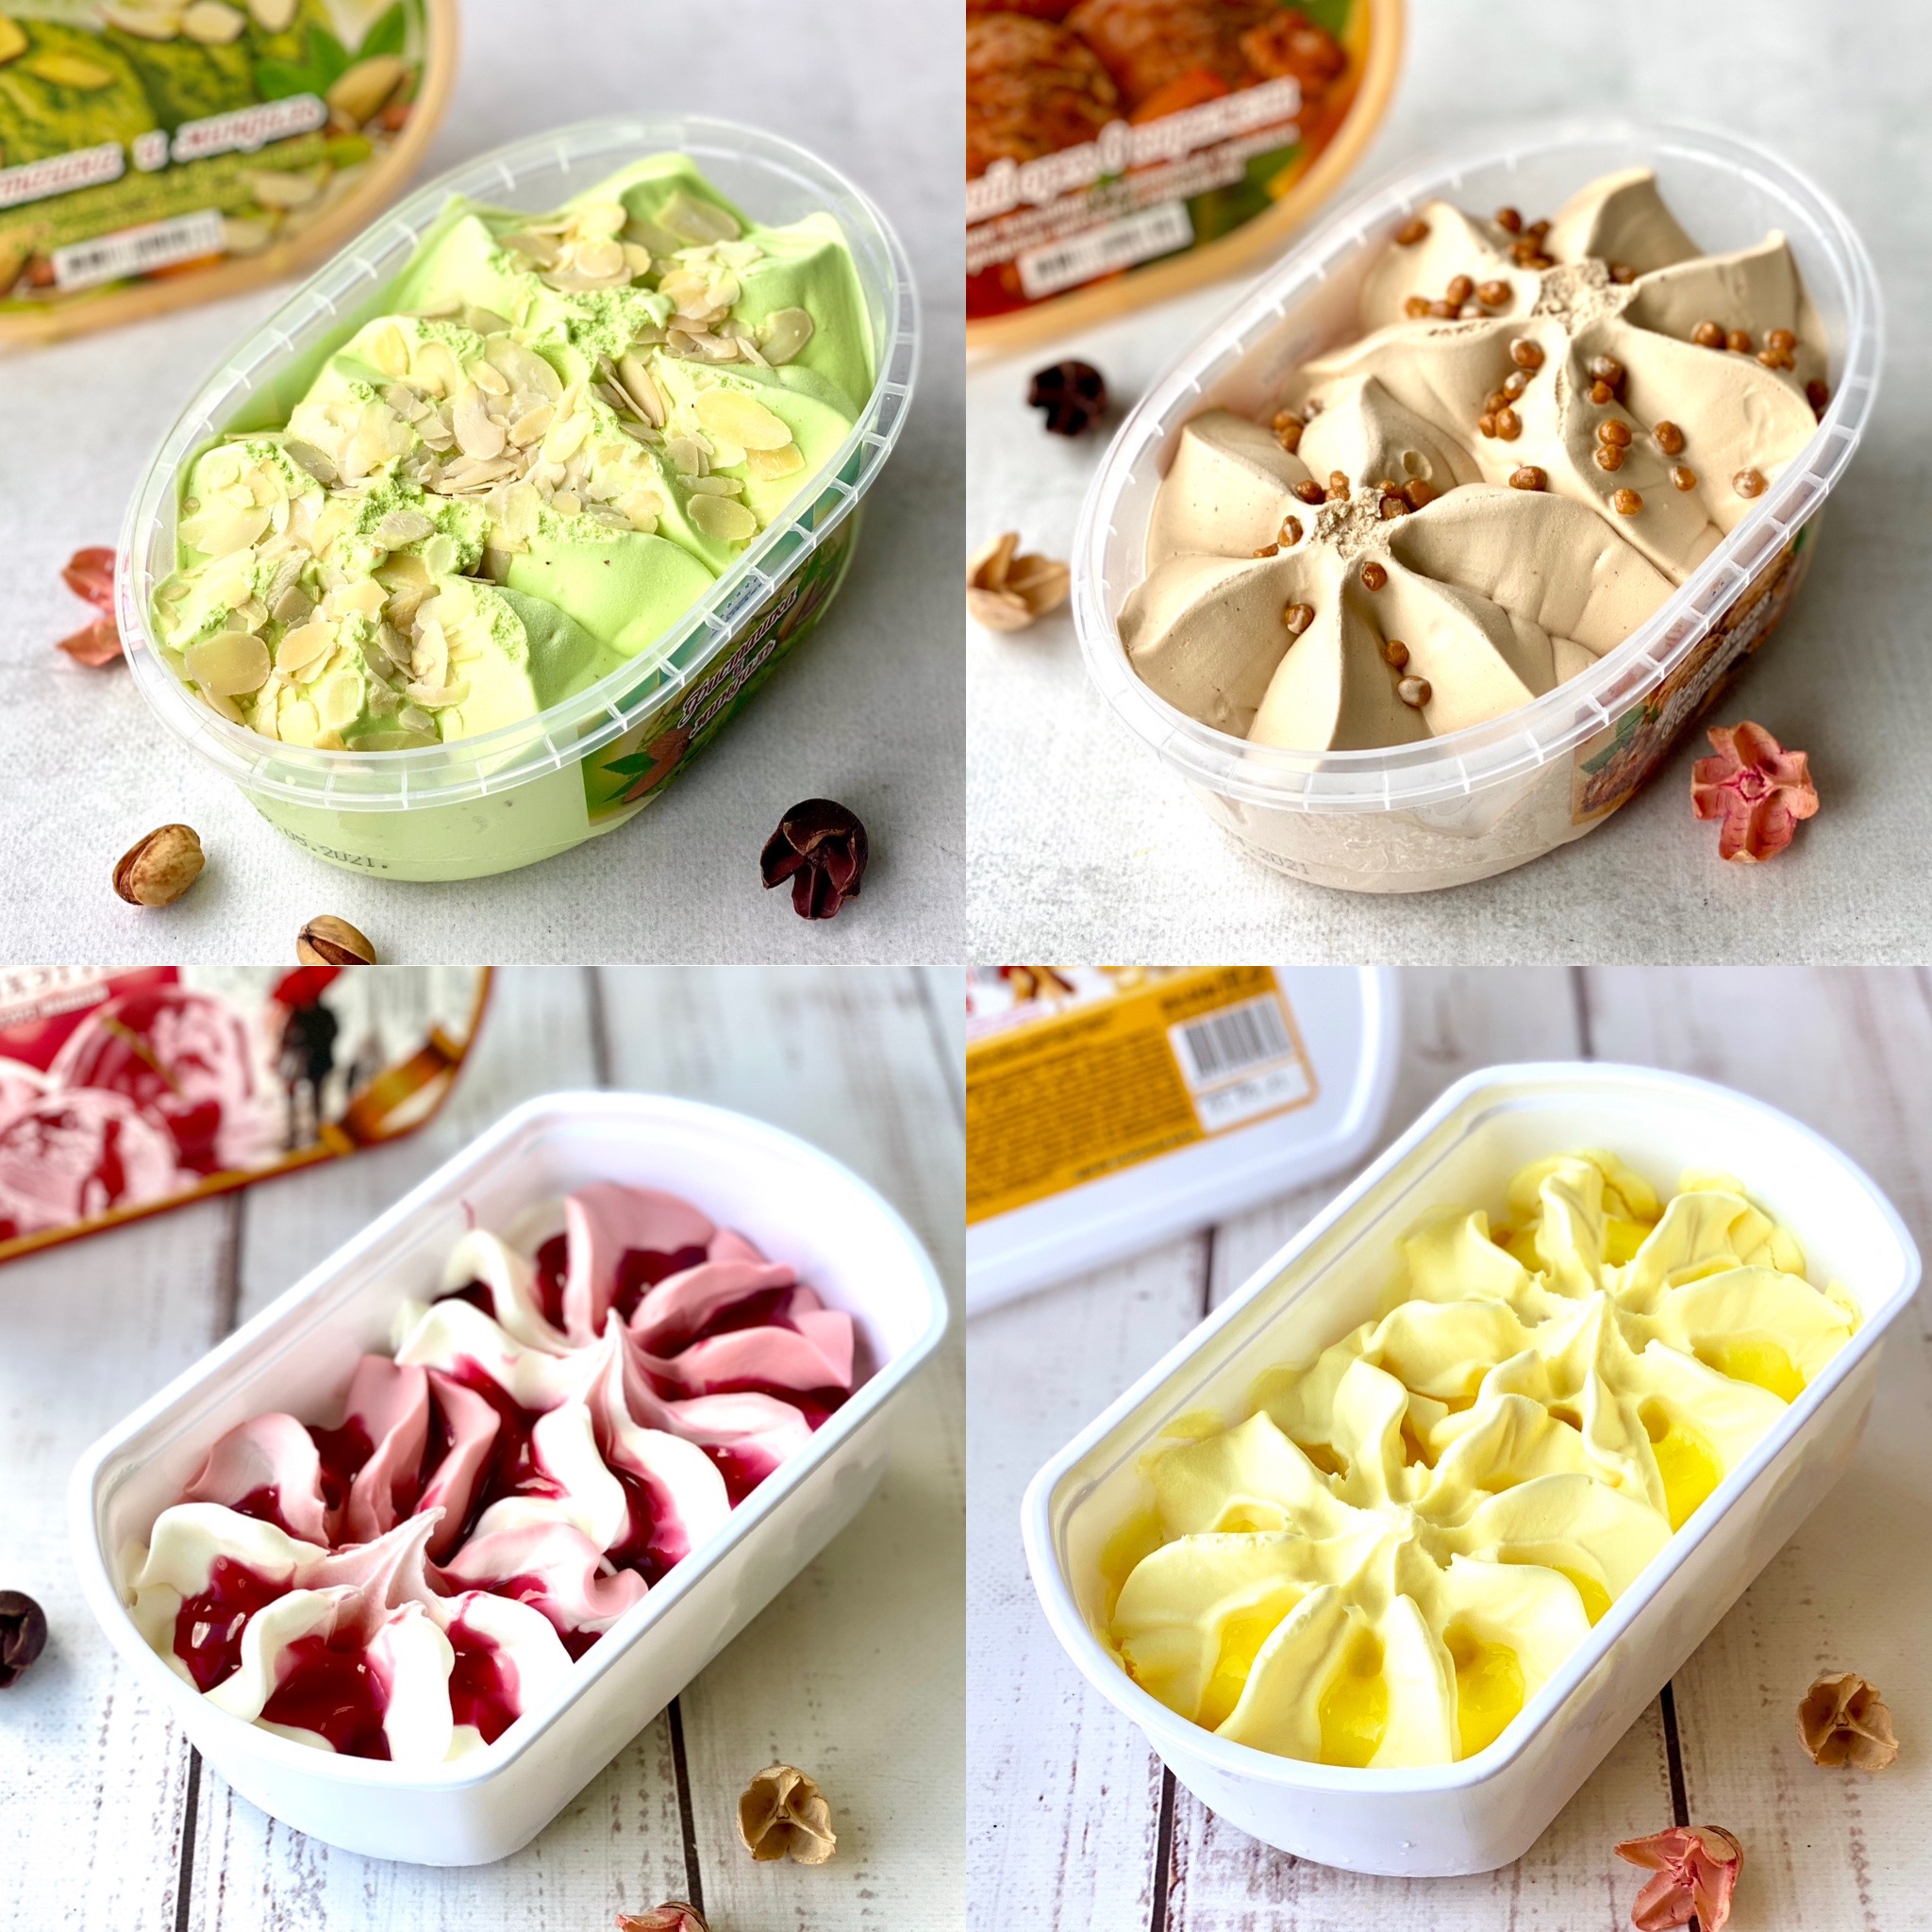 Мороженое в ваннах ассорти 4 вкуса: фисташковое с миндалем, с кленовым сиропом и грецкими орехами в карамели, ананас, йогуртно-вишневое изображение 1